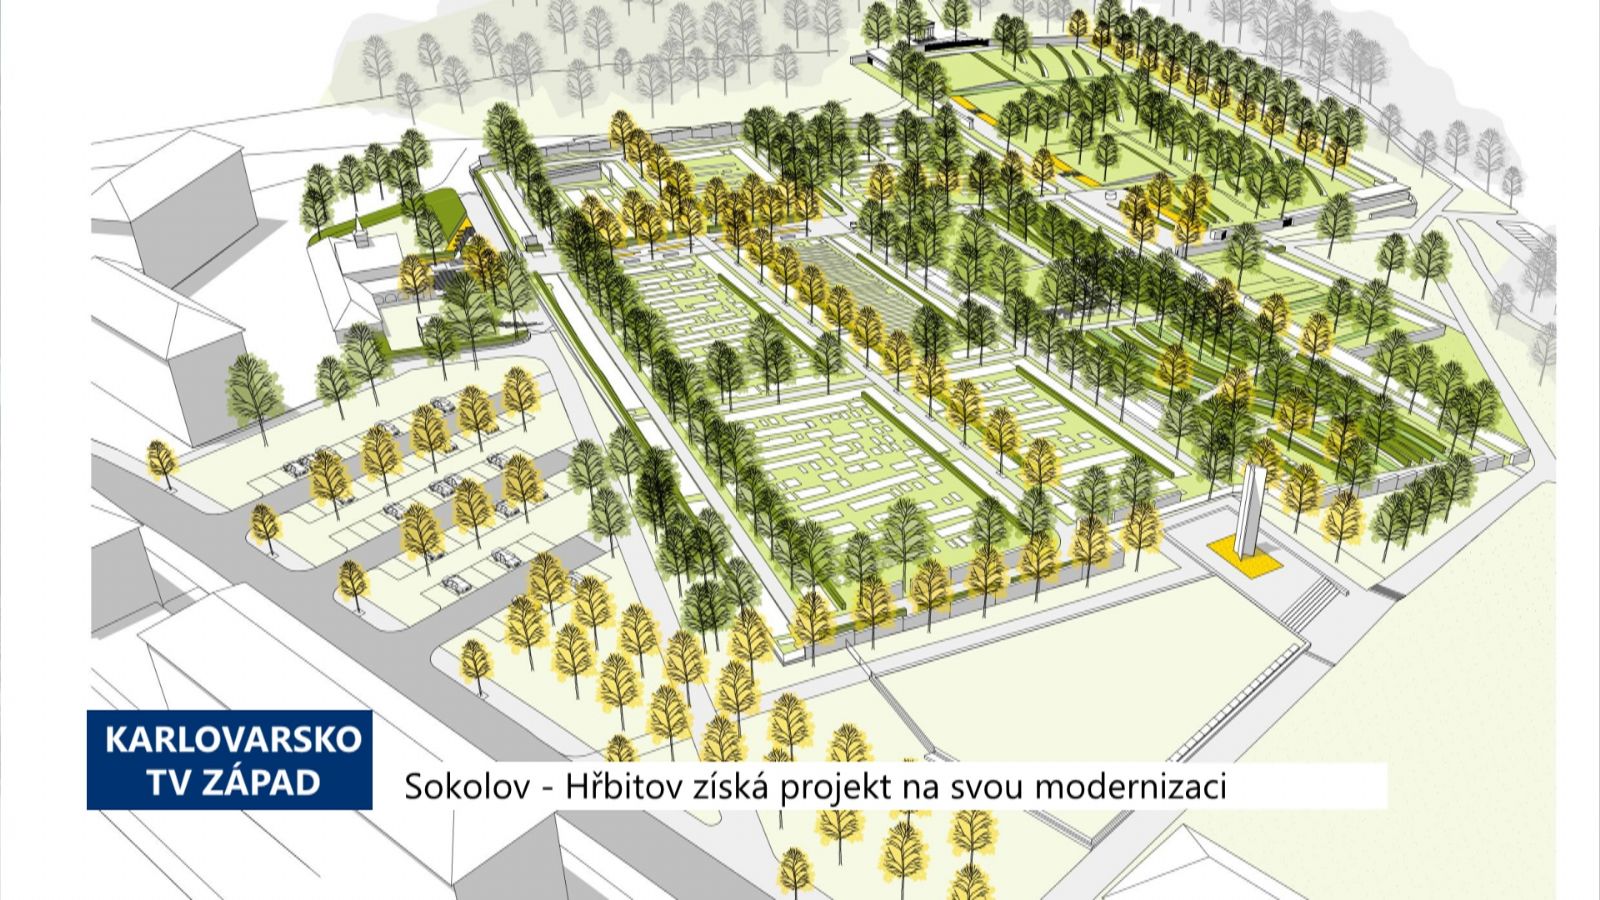 Sokolov: Hřbitov získá projekt na svou modernizaci (TV Západ)